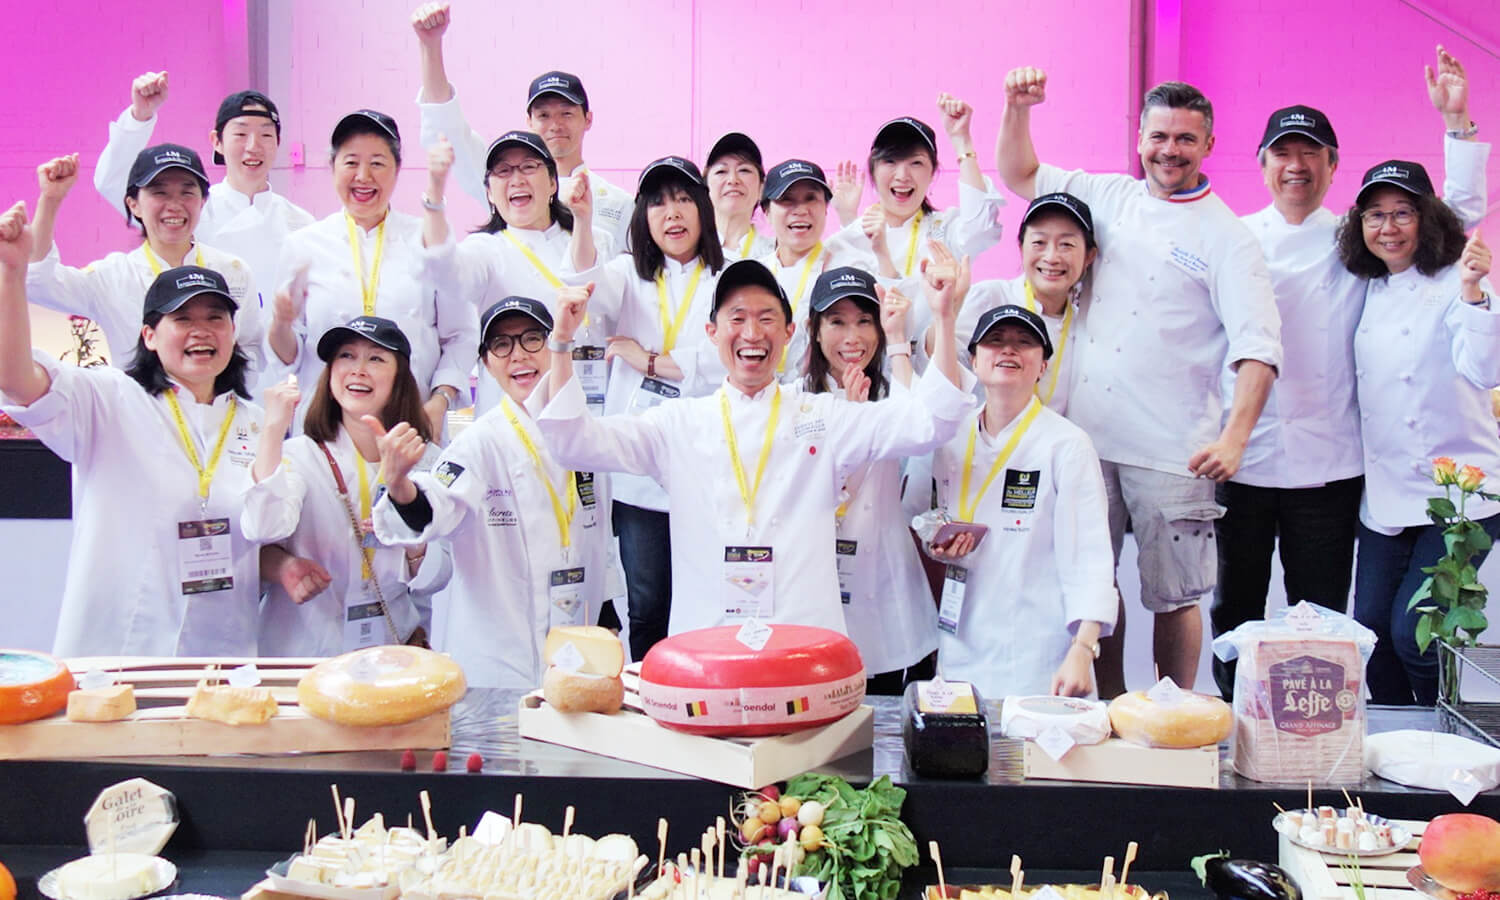 世界最長チーズボード制作を金子率いる日本チームが実現